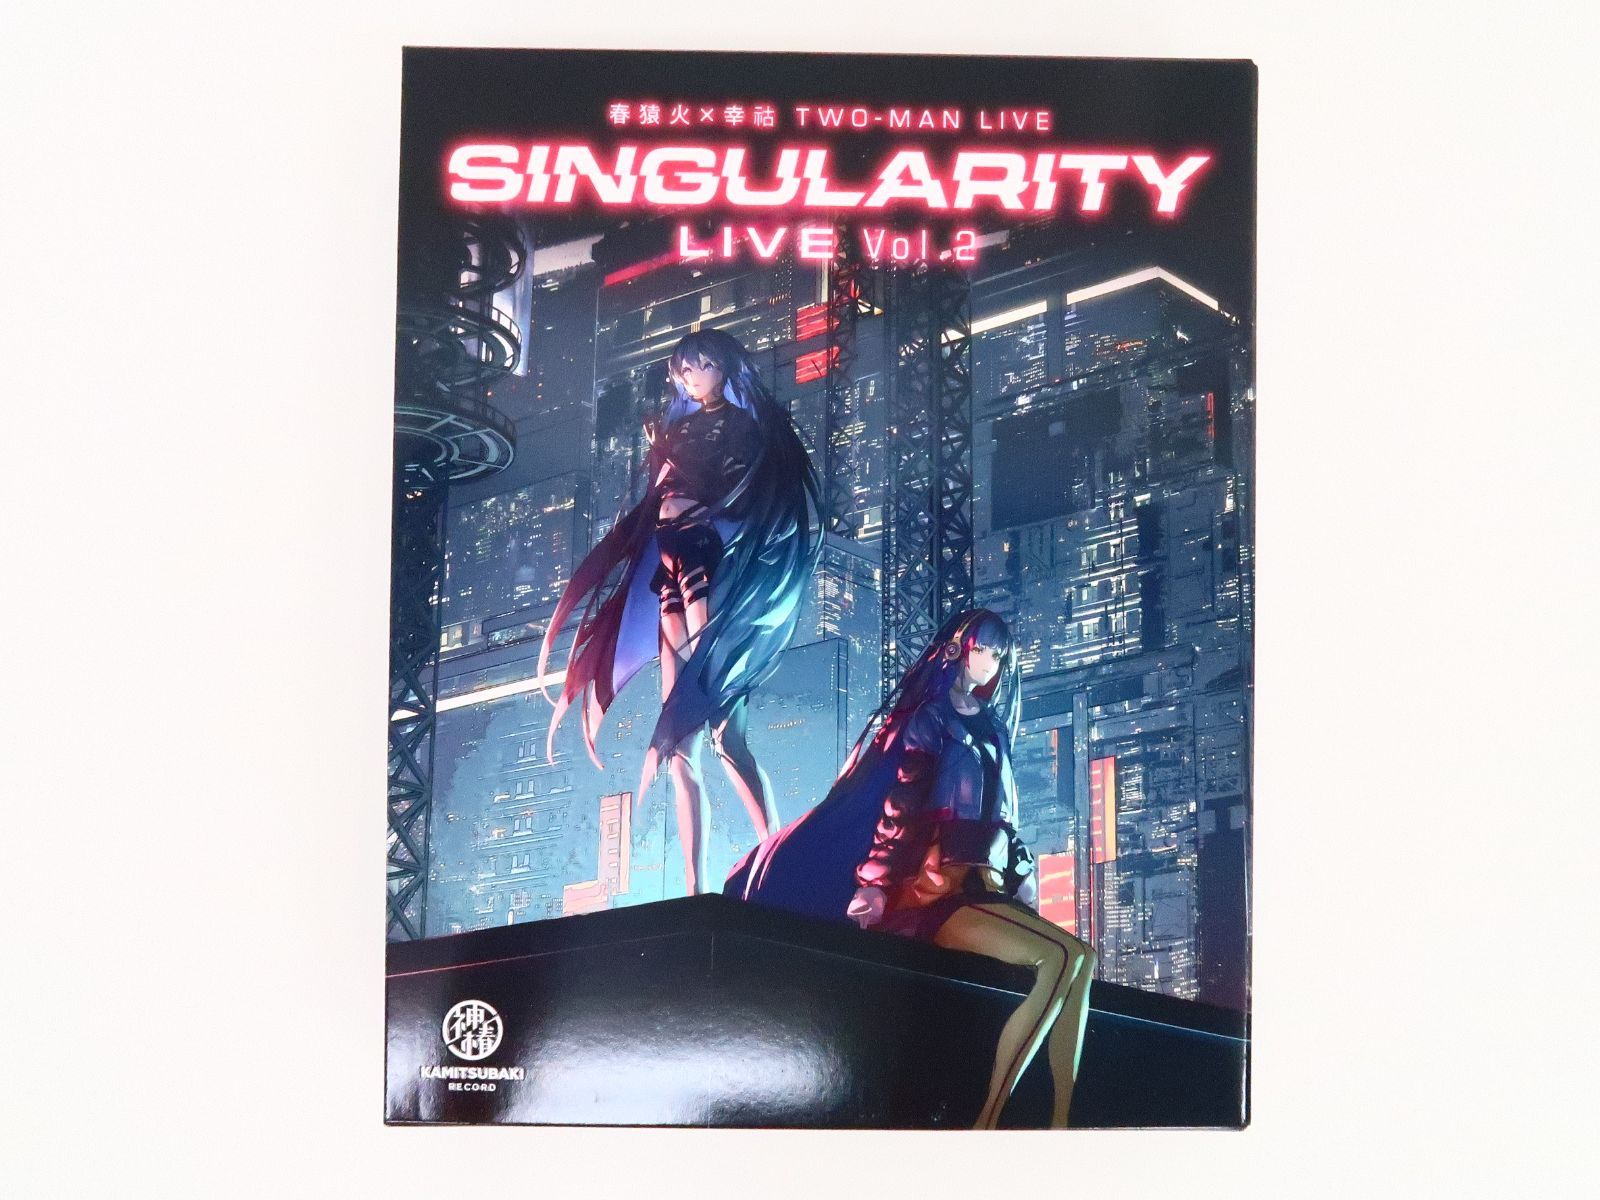 春猿火×幸祜 TWO-MAN LIVE Singularity Live Vol. 2 Blu-ray 神椿